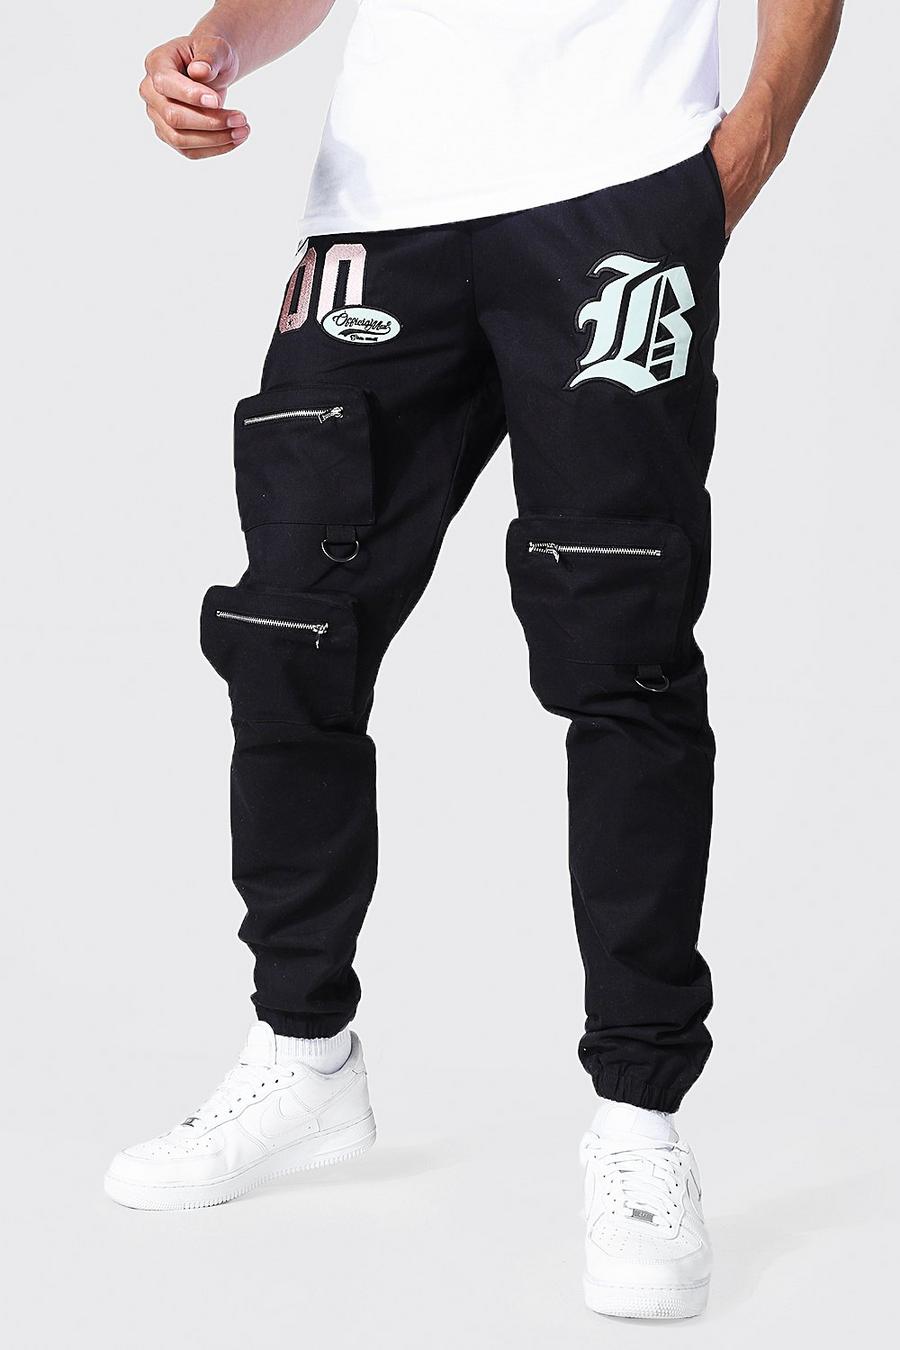 Pantaloni tuta Cargo Tall stile Varsity con tasche frontali, Black negro